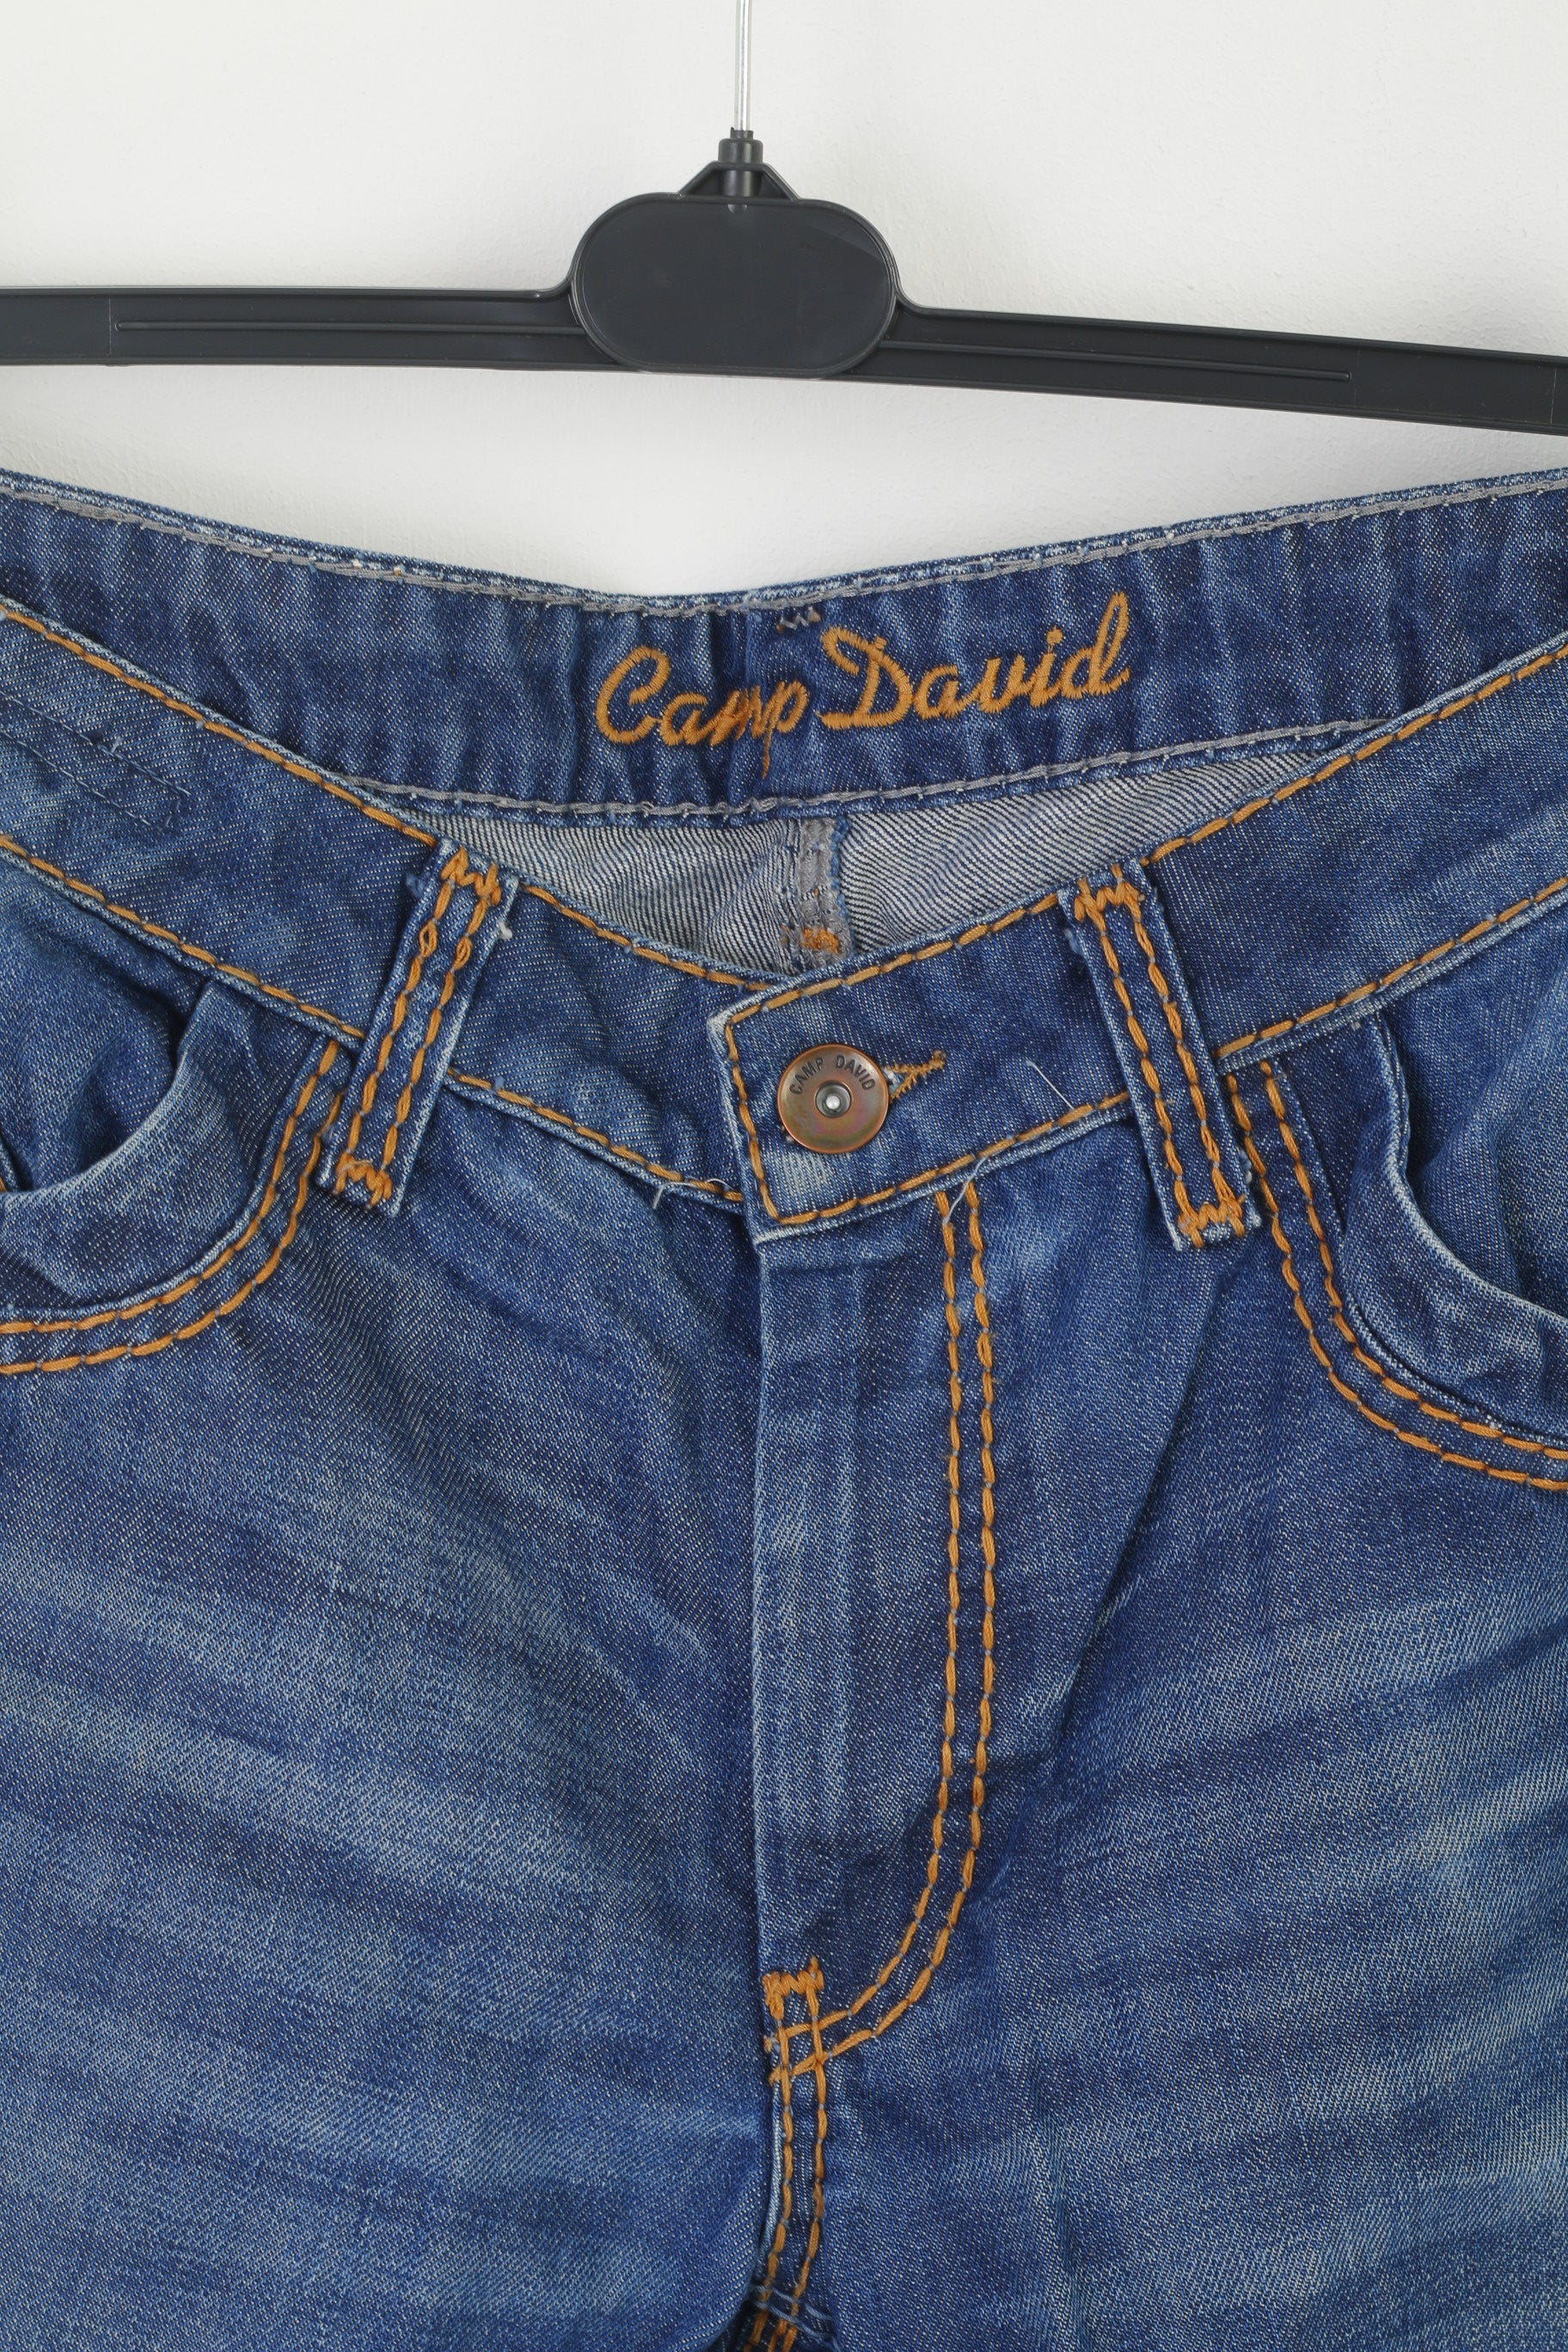 Camp David Men 36 Jeans Trousers Navy Denim Cotton Long Straight Leg P –  Retrospect Clothes